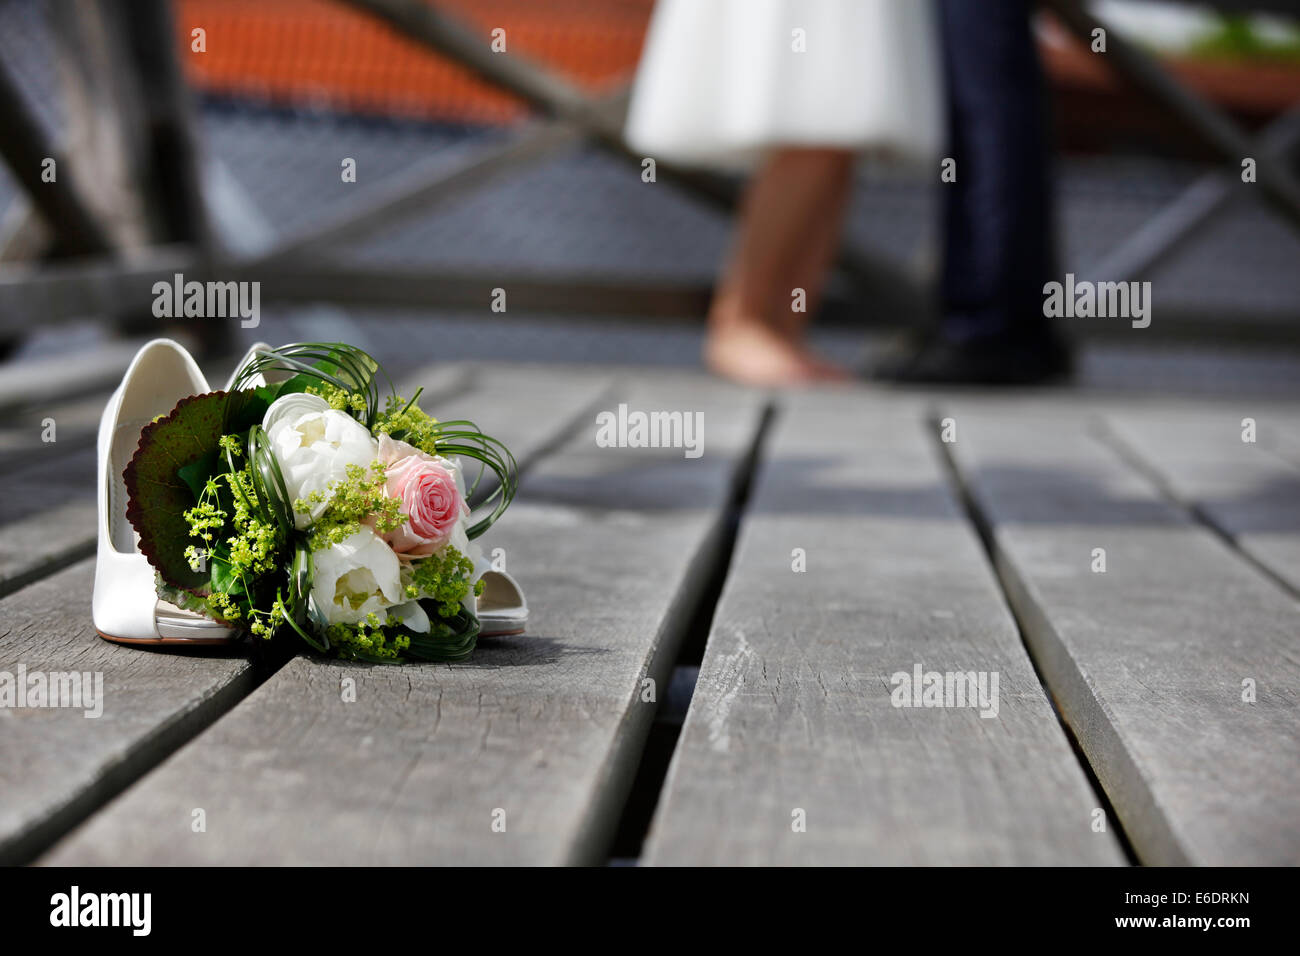 Mariée avec bouquet de roses blanches se trouvant sur le plancher Banque D'Images